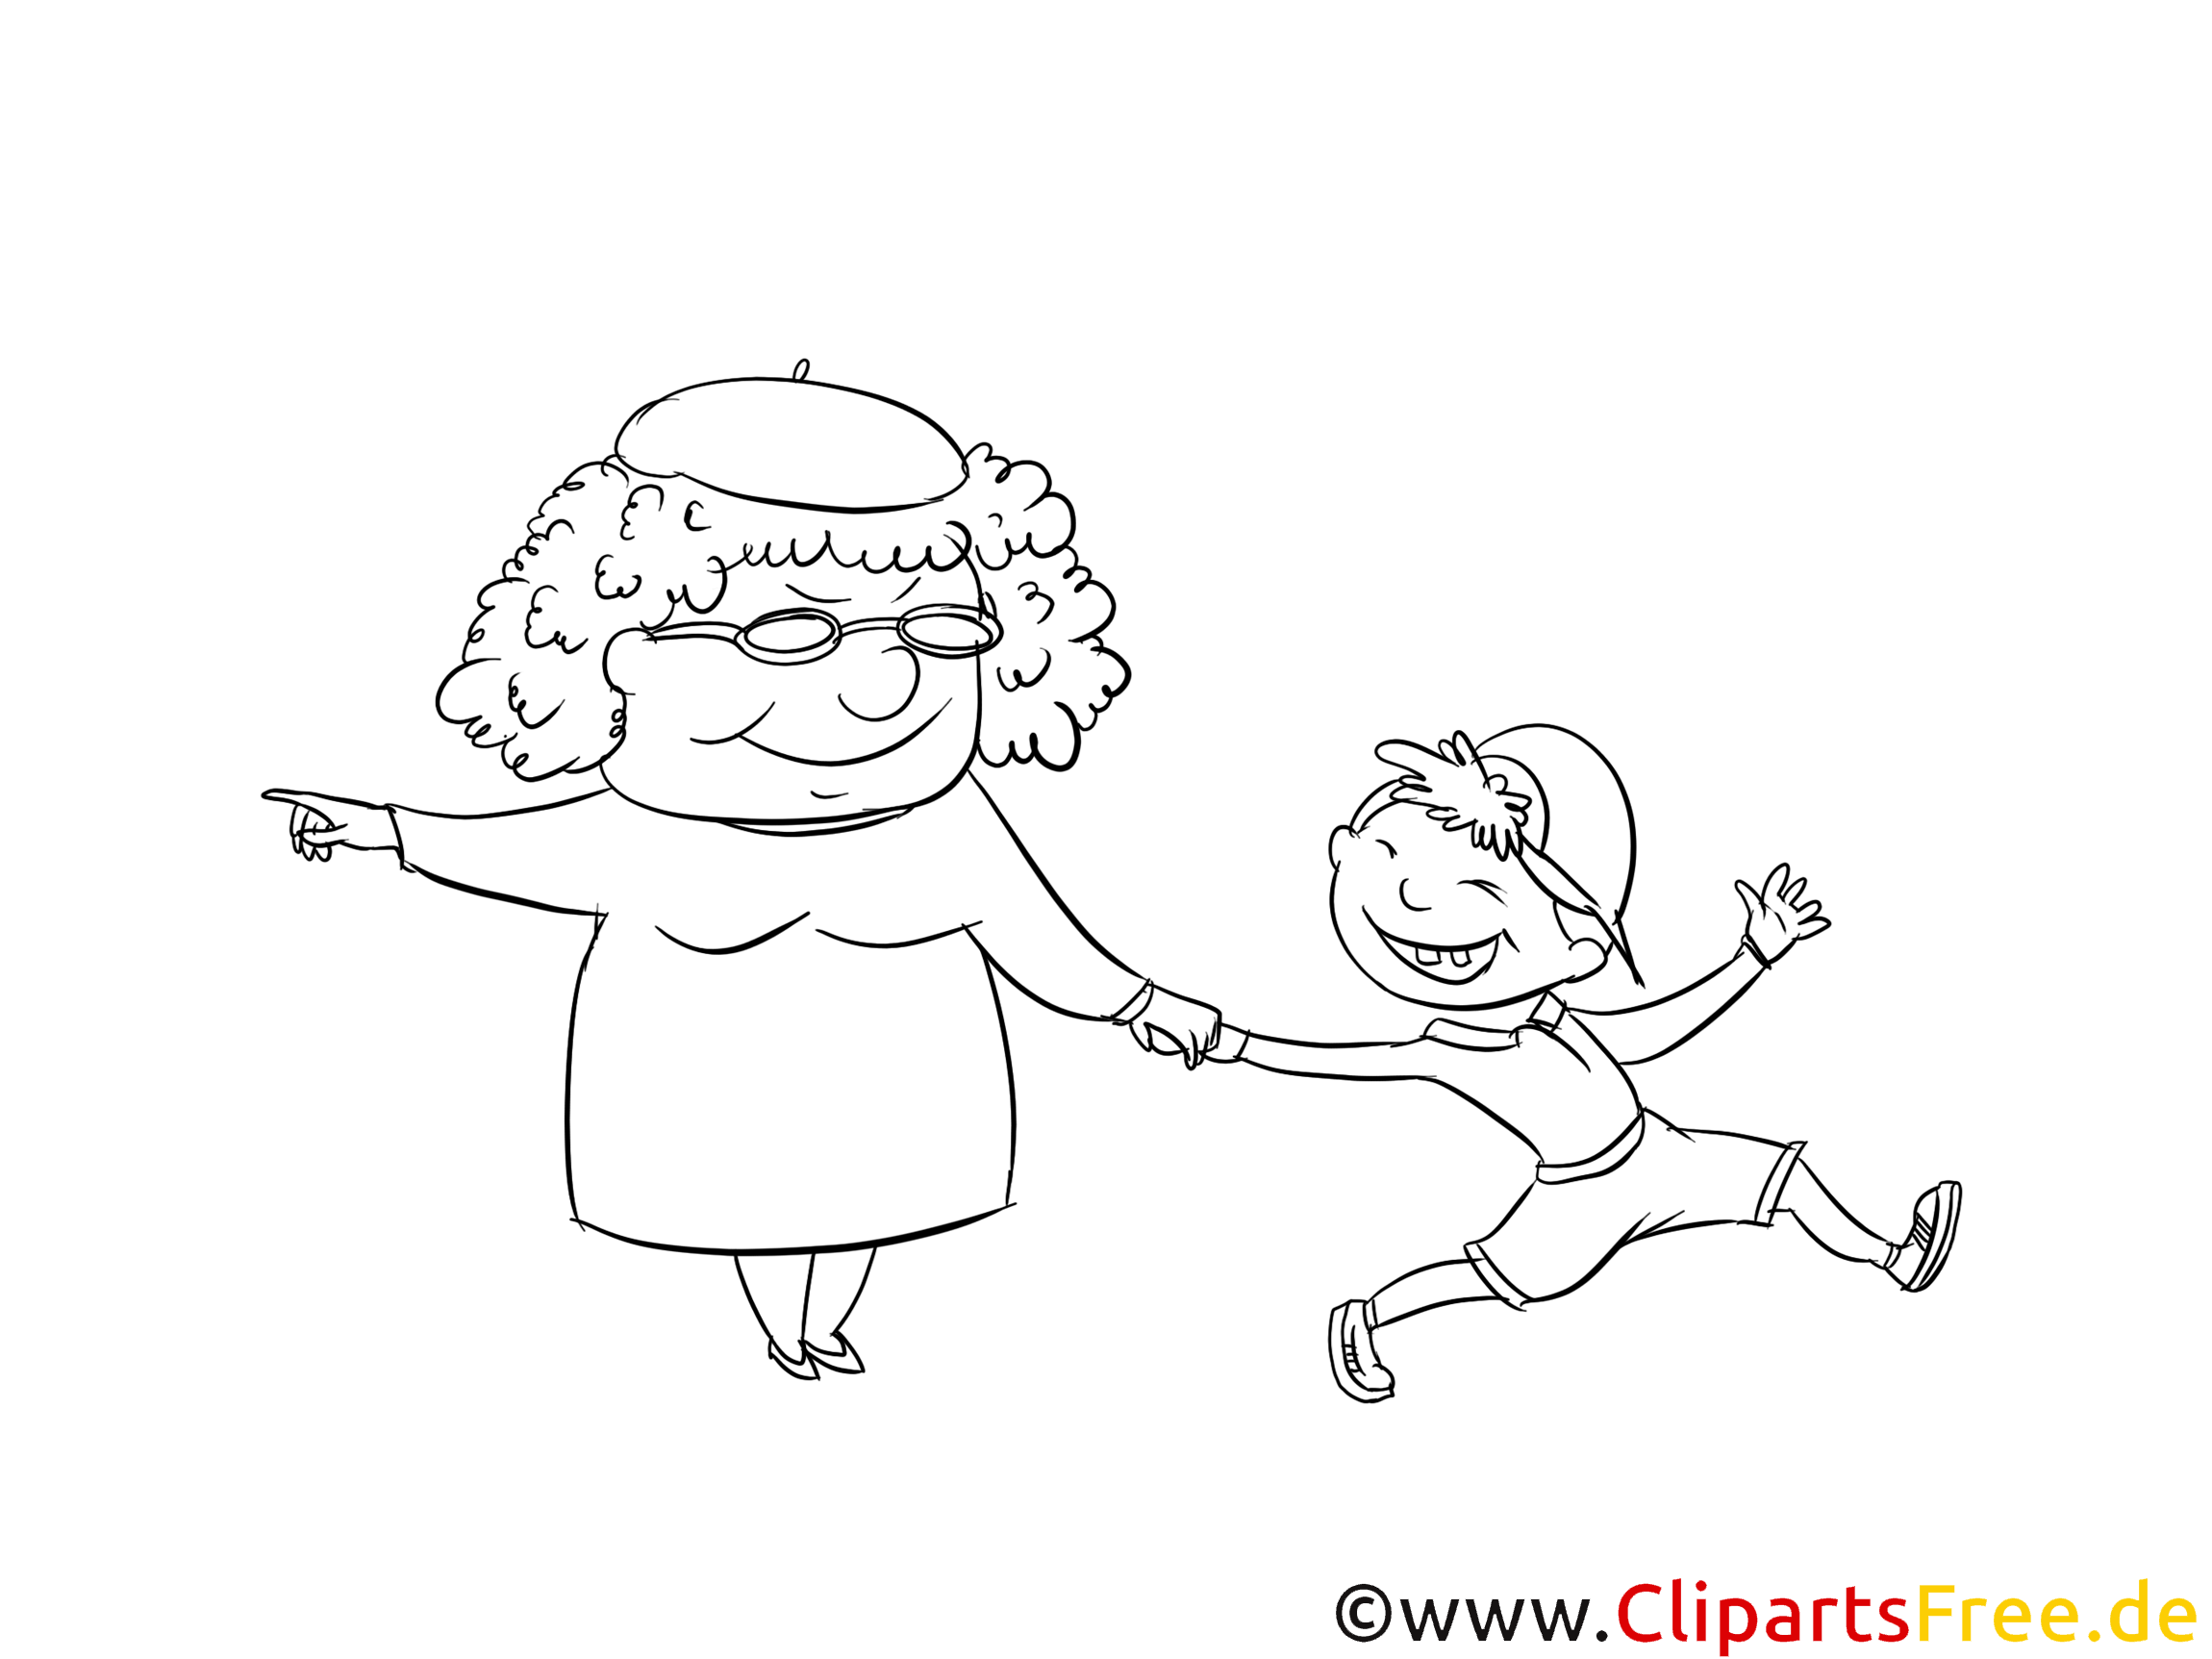 Grand-mère images gratuites – Cartoons à colorier